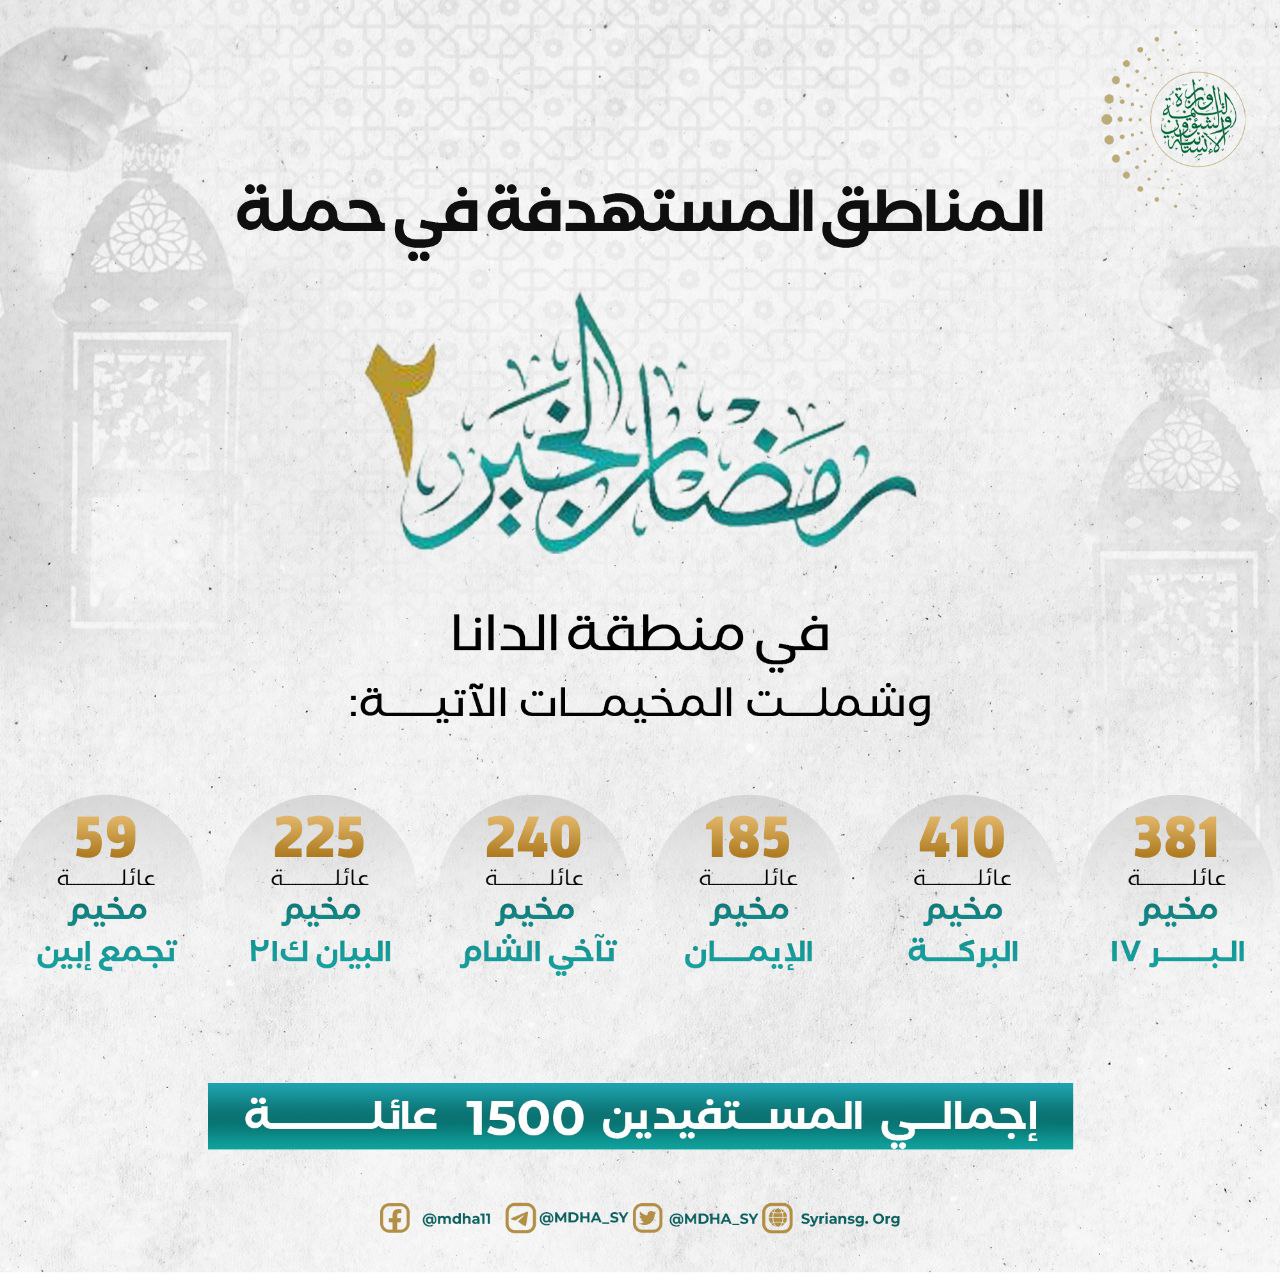 المناطق المستهدفة في حملة رمضان الخير 2 في منطقة الدانا.